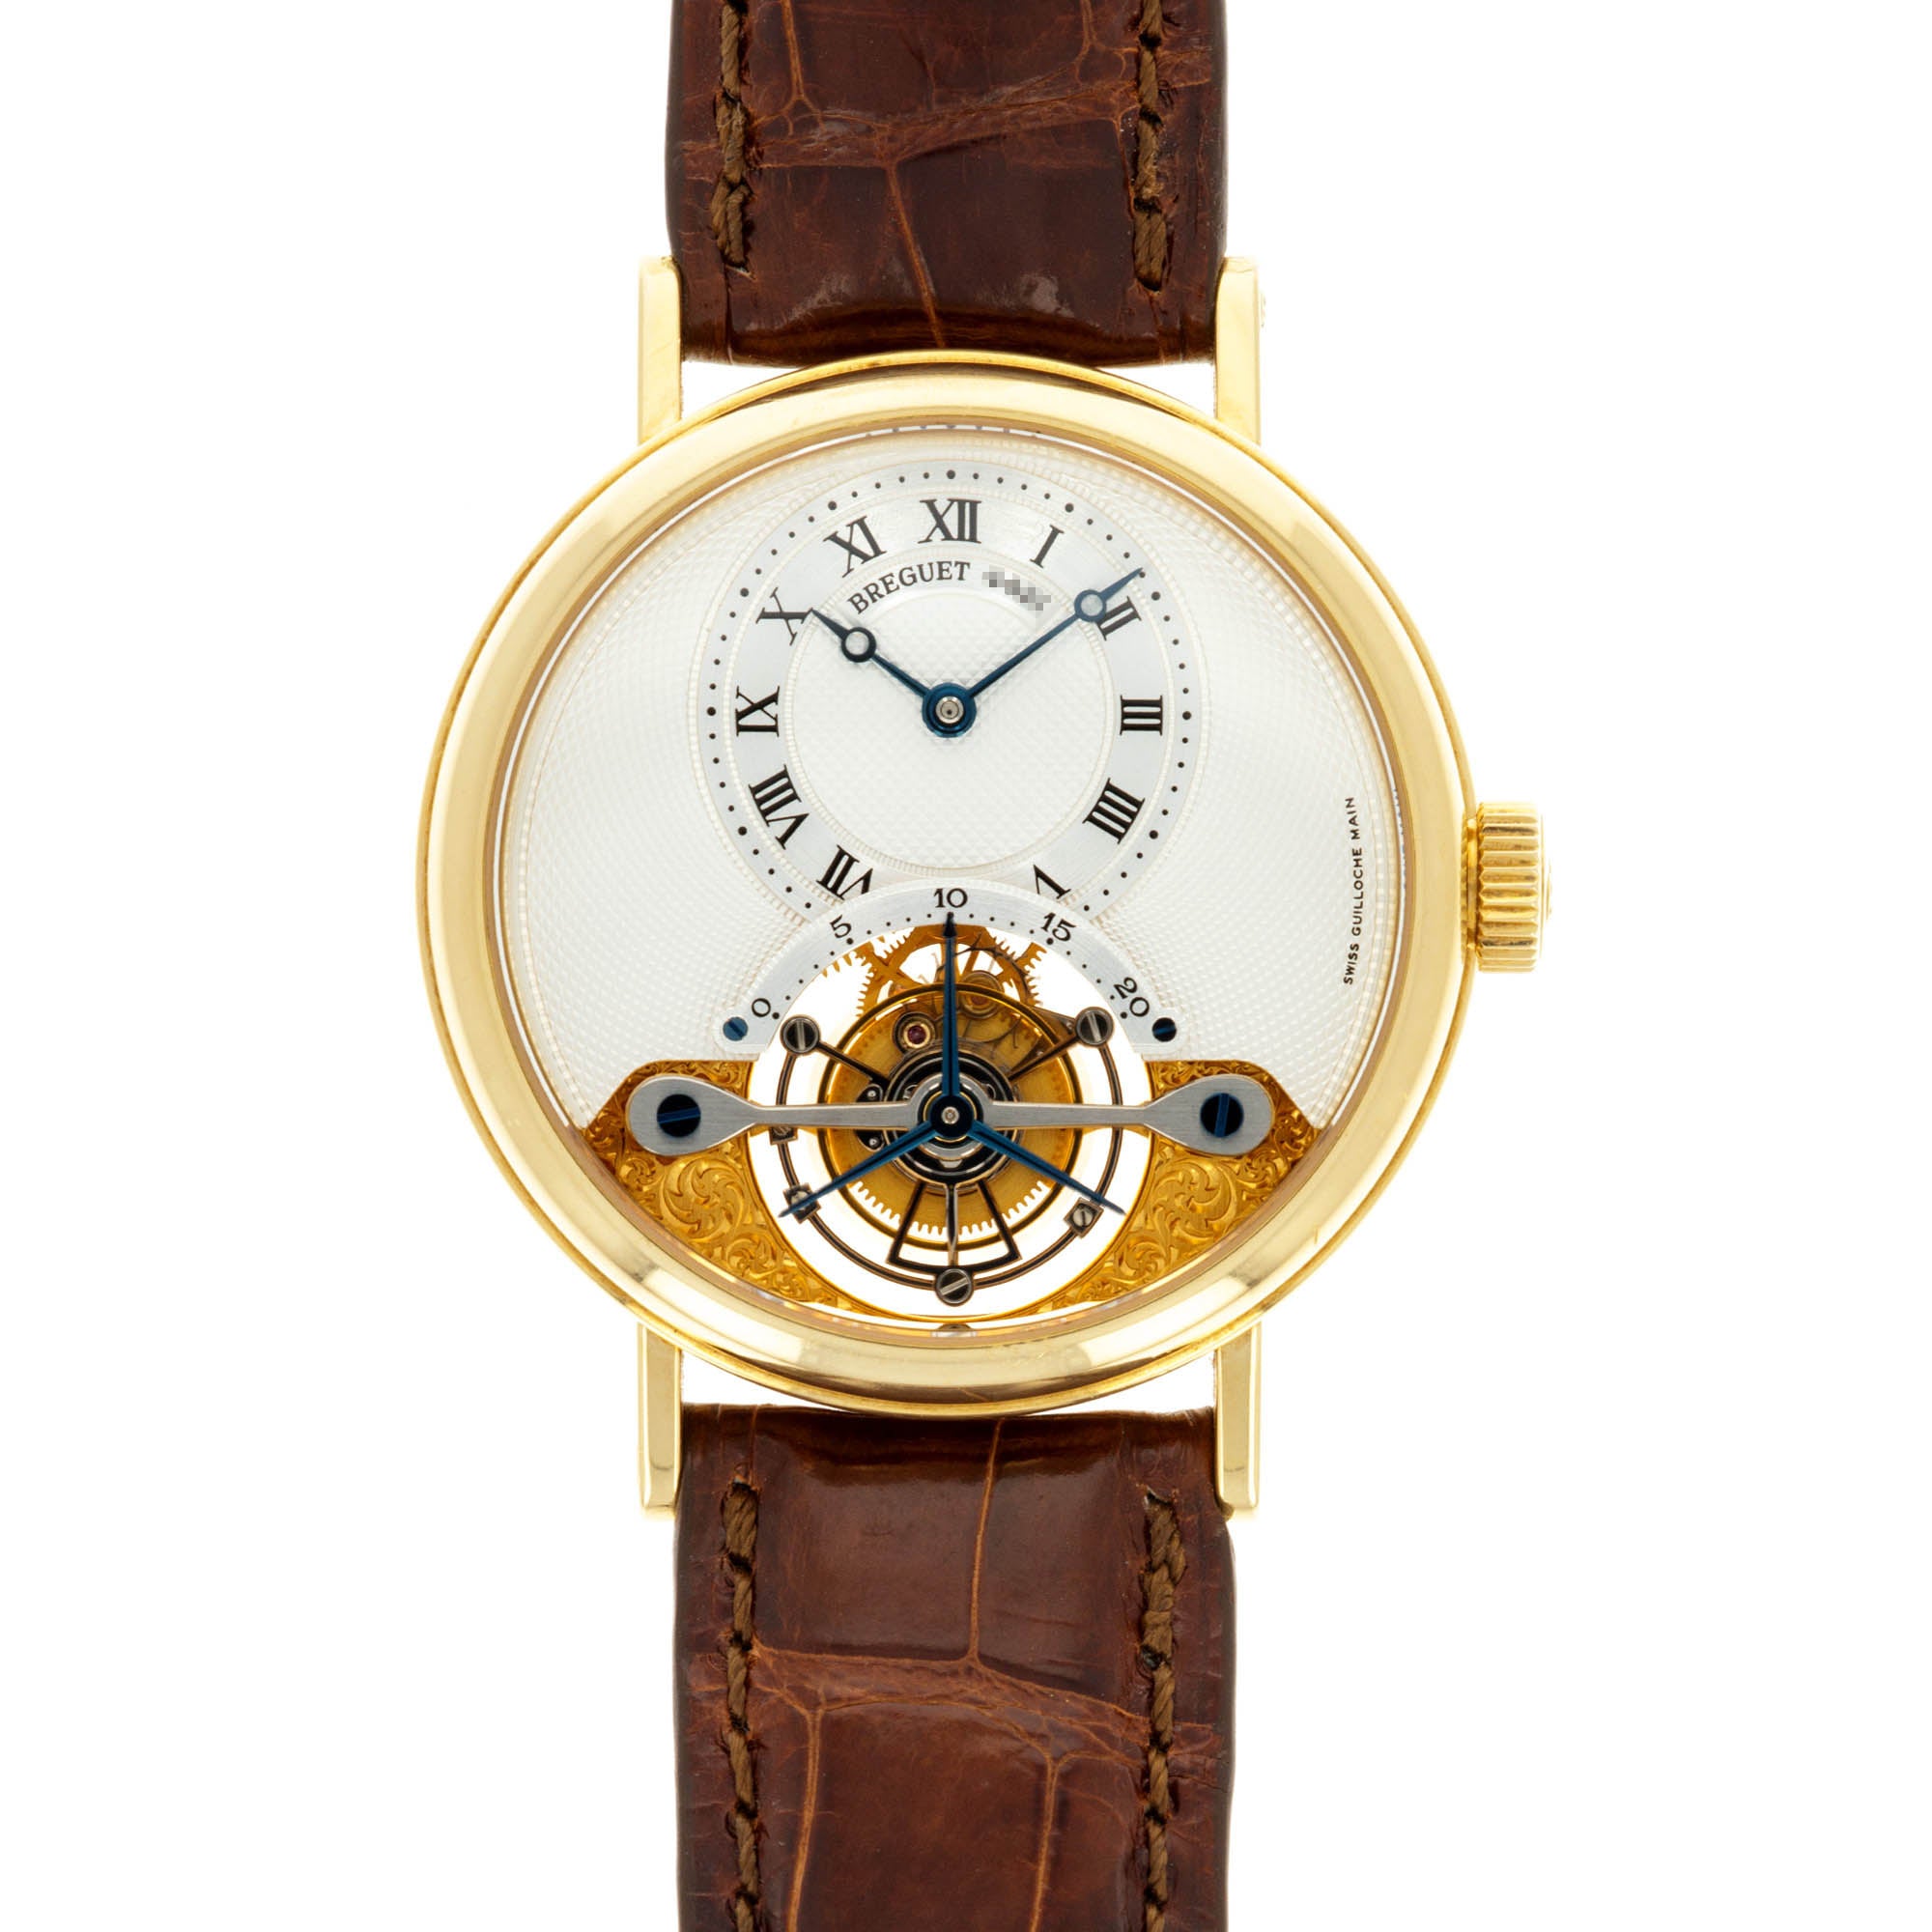 Breguet - Breguet Yellow Gold Classique Complications Tourbillon Watch Ref. 3357 - The Keystone Watches